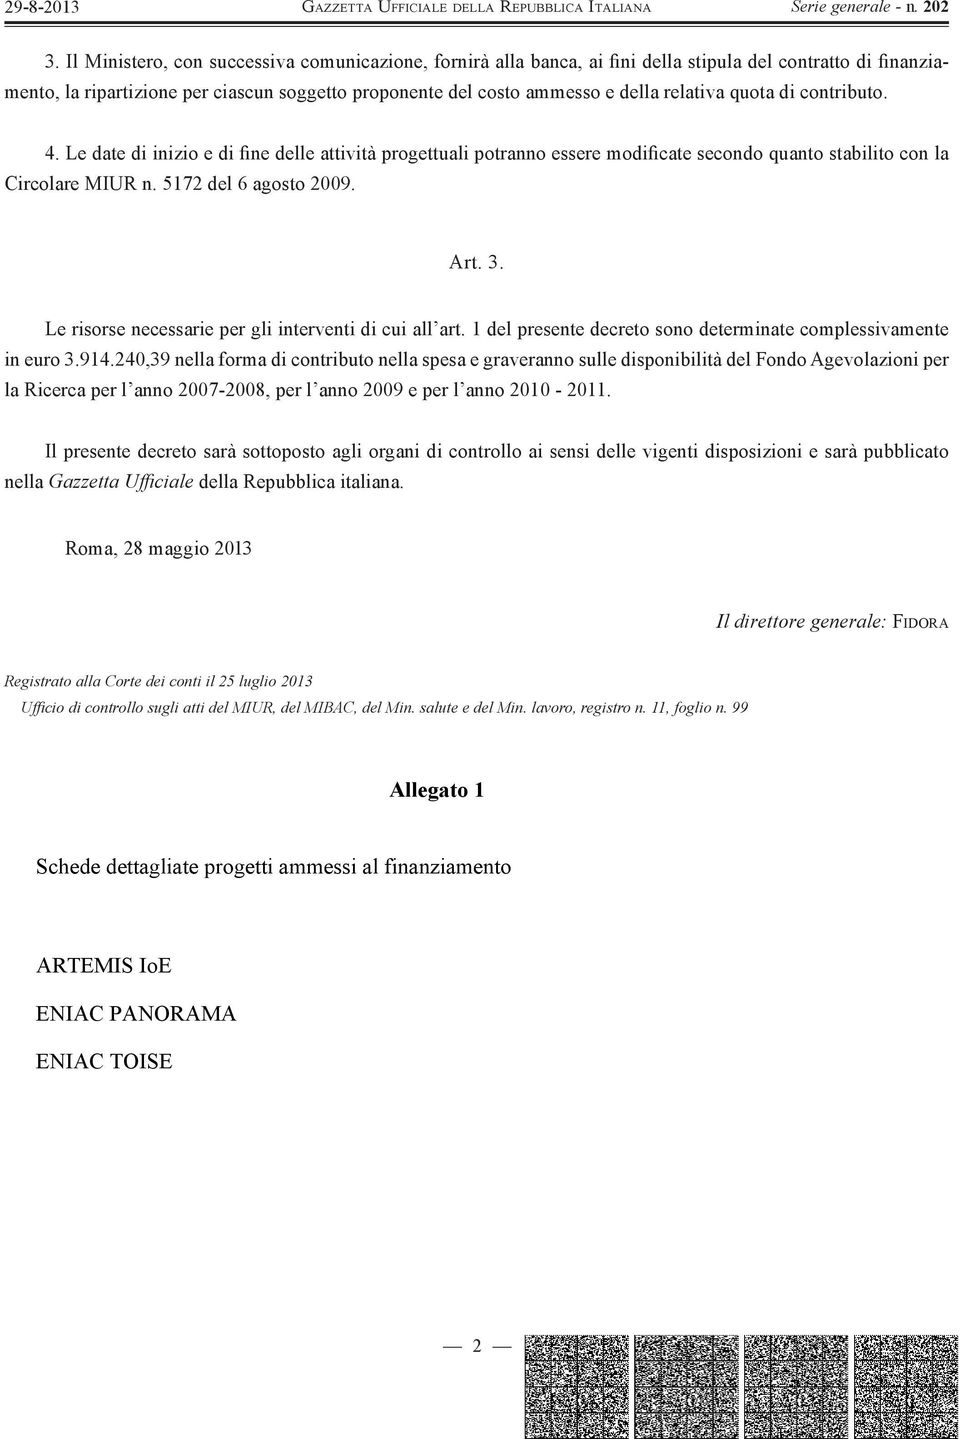 Le risorse necessarie per gli interventi di cui all art. 1 del presente decreto sono determinate complessivamente in euro 3.914.